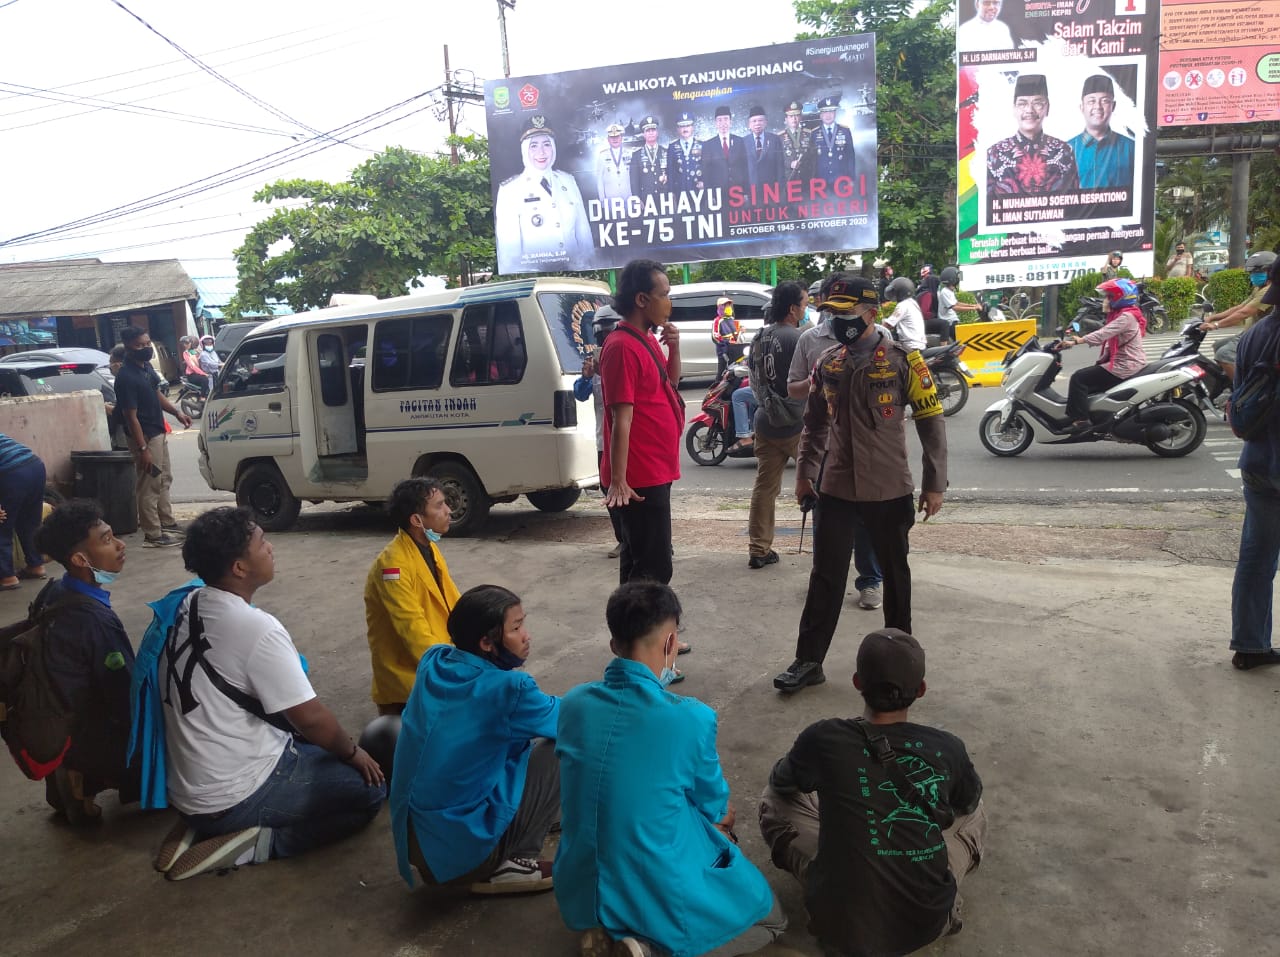 Bakar Pembatas Jalan di Tegah Jalan, Enam Orang Mahasiswa Diamakan Polisi